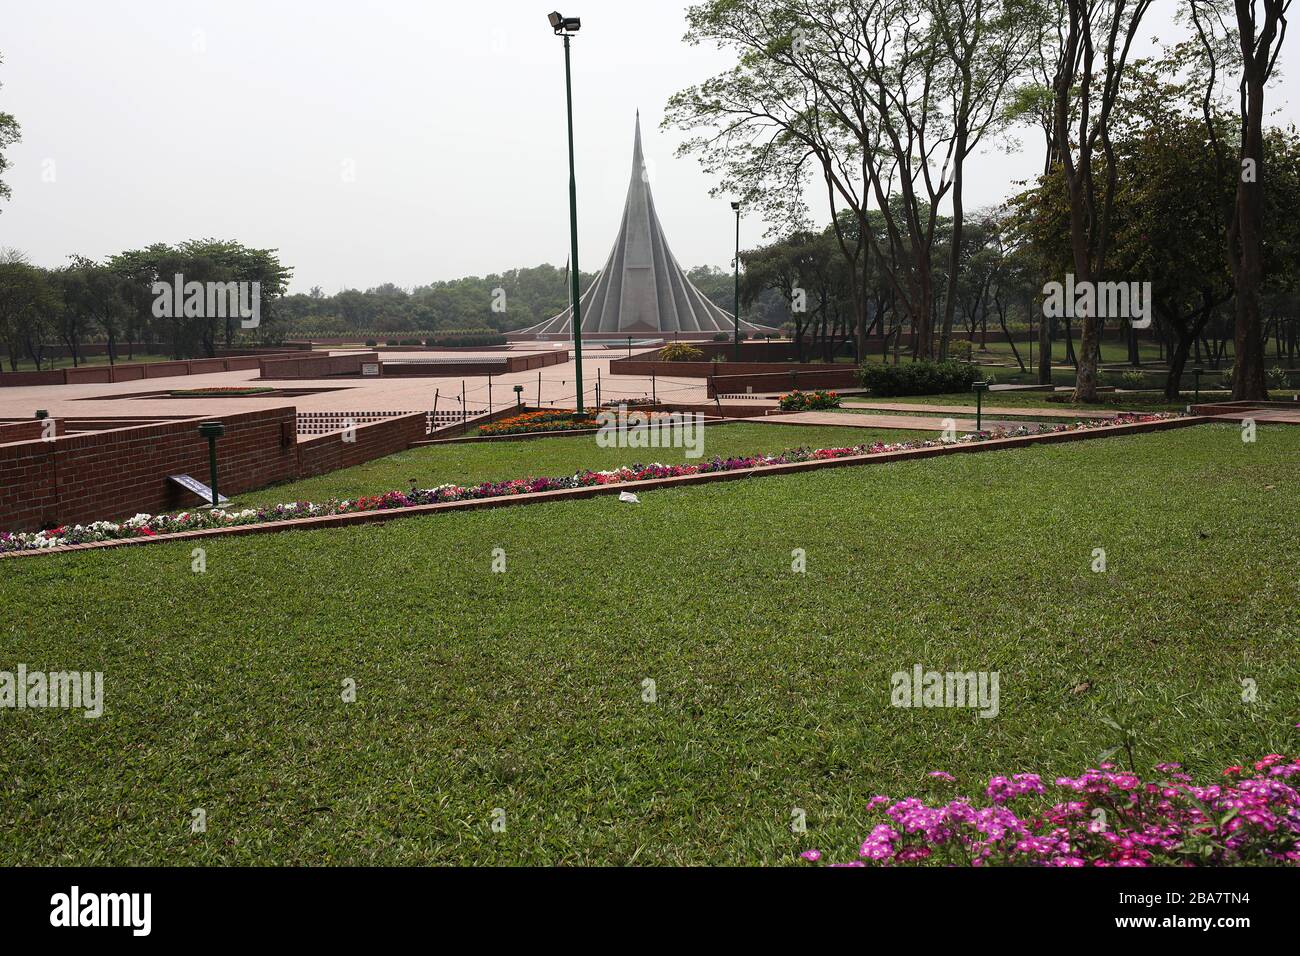 Dhaka, Bangladesch. Februar 2020. Das Nationale Denkmal in Savar am Rande der Hauptstadt ist am 26. März am Unabhängigkeitstag Bangladeschs verlassen worden, während das Land wegen der Coronavirus Pandemie in der Regel an diesem Tag mit Menschen zusammenhängt. Dhaka 26. märz 2020. Credit: Alamy/Alamy Live News Stockfoto